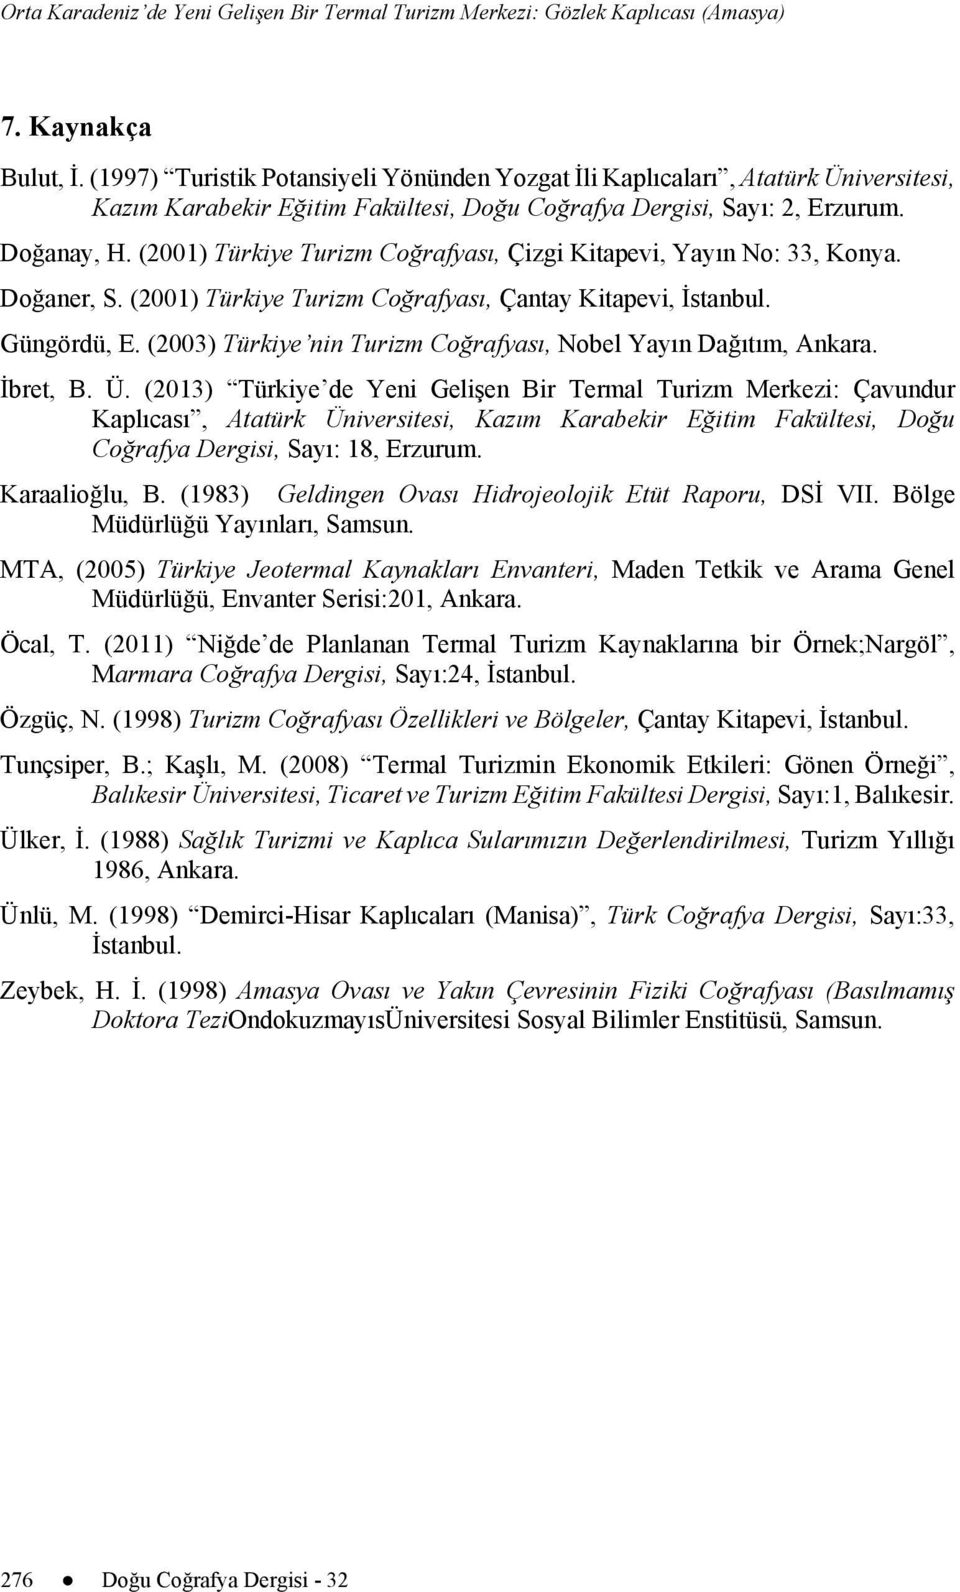 (2001) Türkiye Turizm Coğrafyası, Çizgi Kitapevi, Yayın No: 33, Konya. Doğaner, S. (2001) Türkiye Turizm Coğrafyası, Çantay Kitapevi, İstanbul. Güngördü, E.